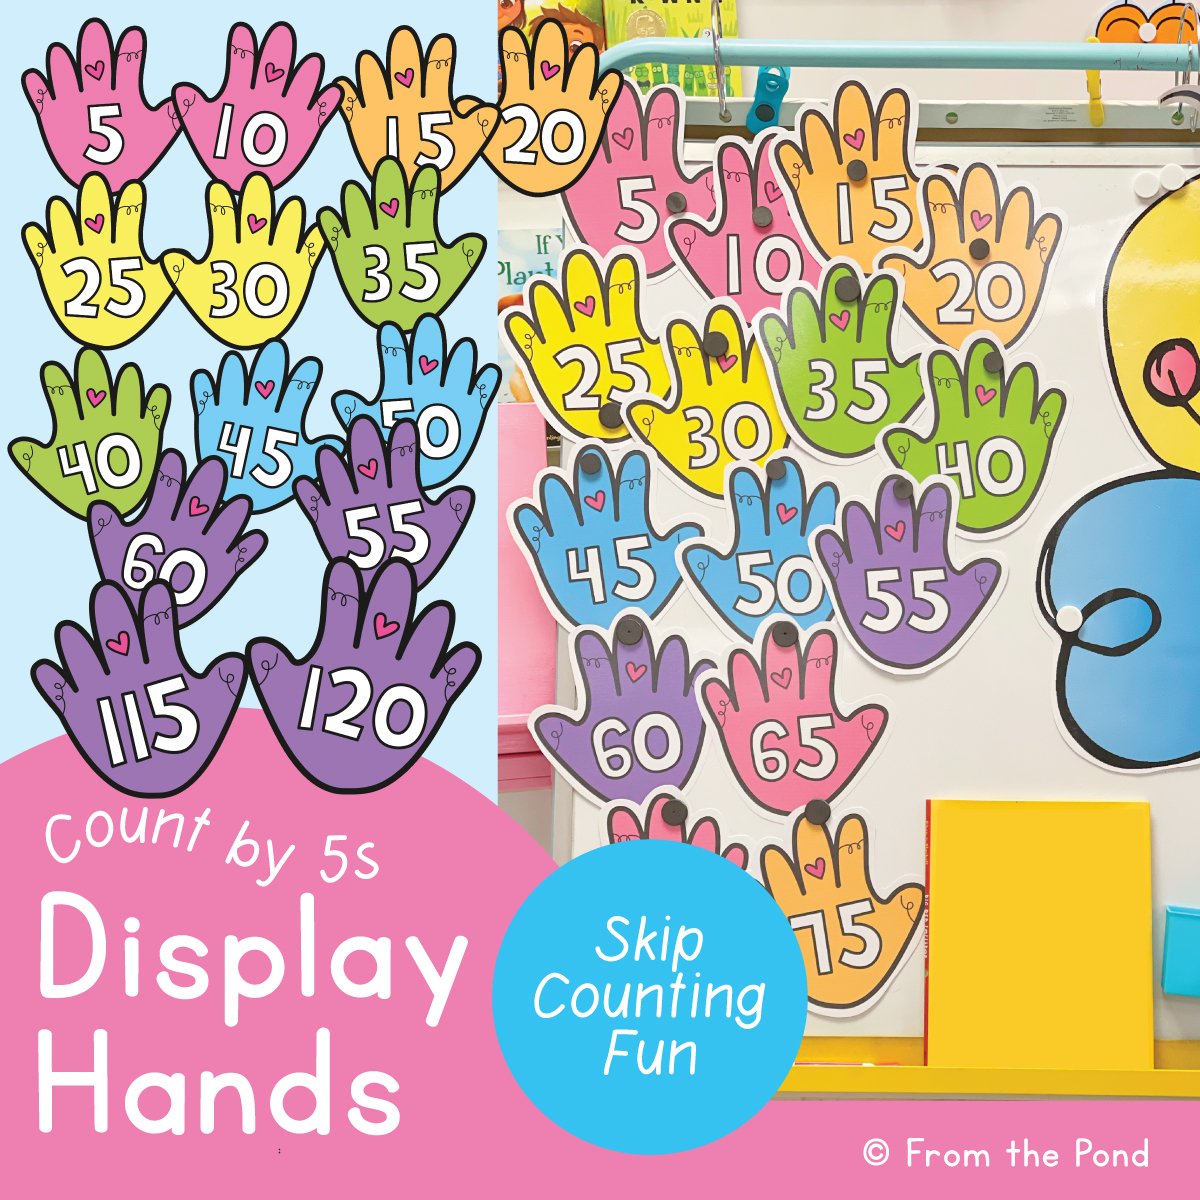 Display Hands